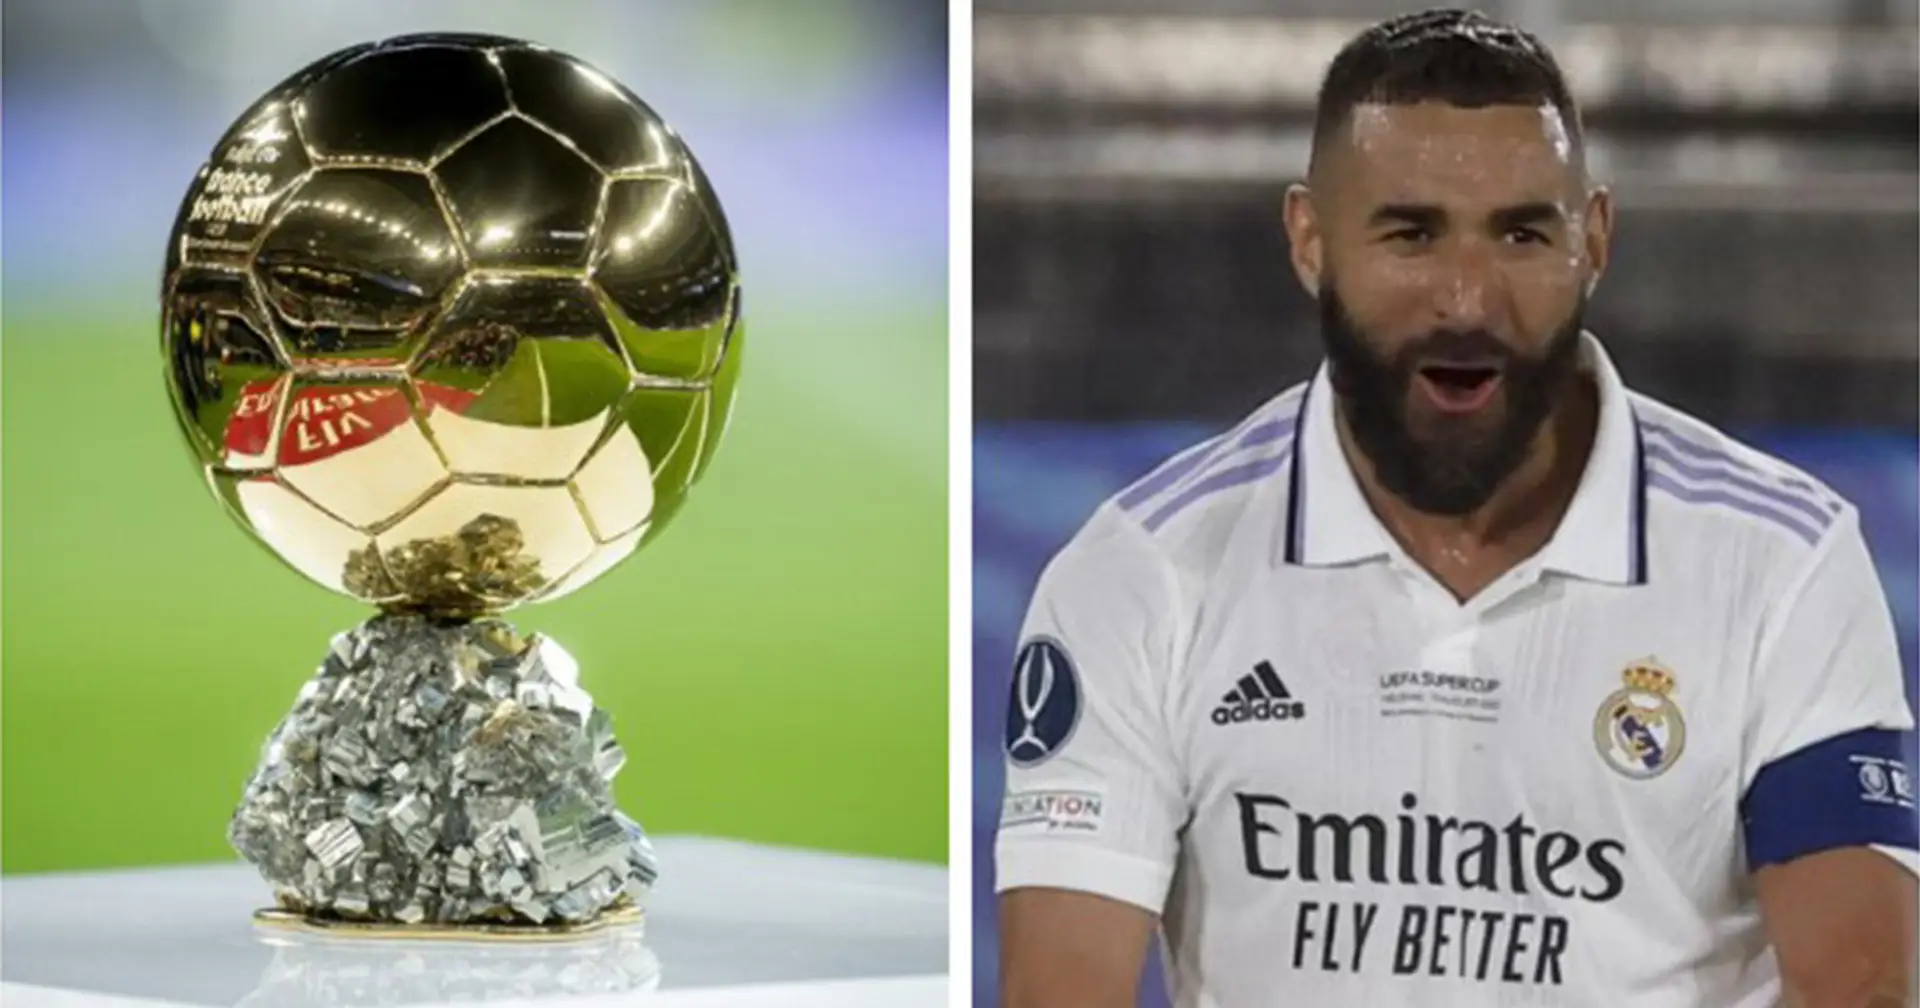 Erst der Clasico, dann der Ballon d'Or: Zwei wichtige Ereignisse für Karim Benzema im Oktober